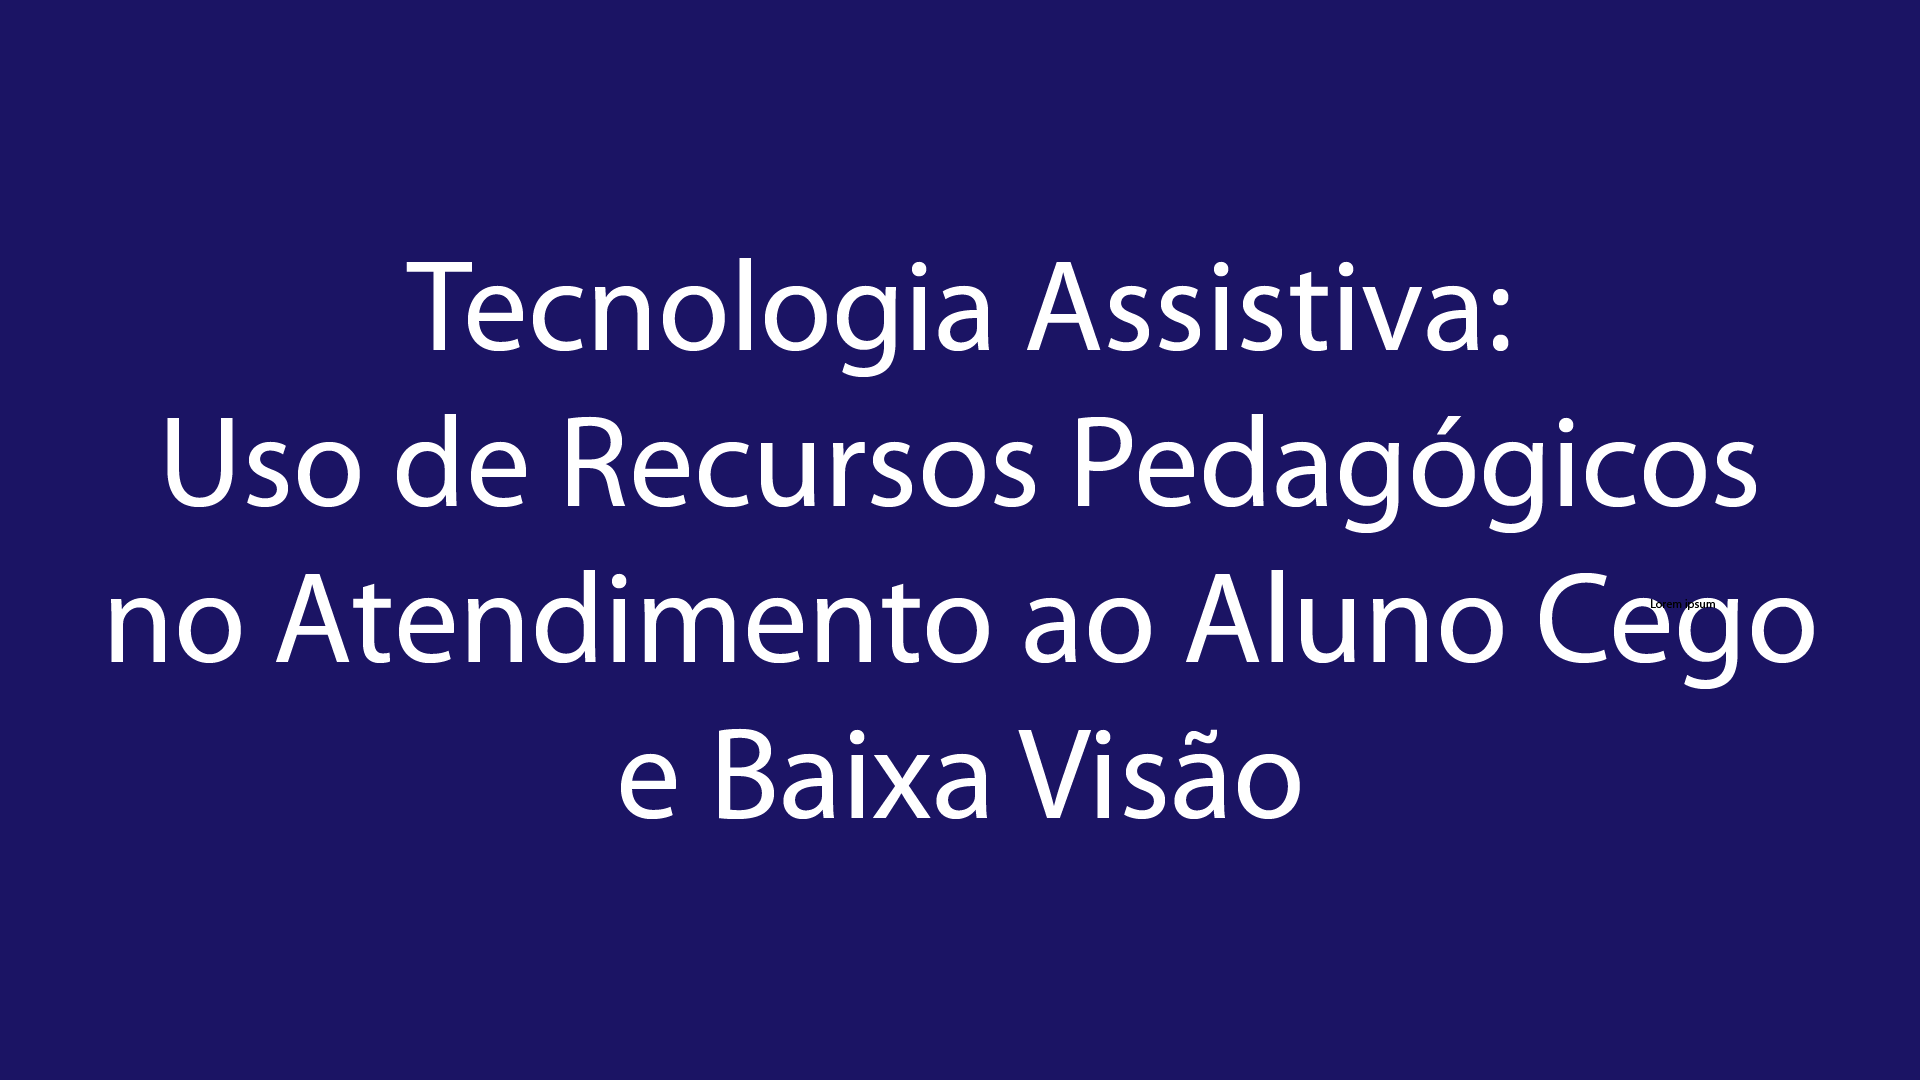 Tecnologia Assistiva: Uso de Recursos Pedagógicos no Atendimento ao Aluno Cego e Baixa Visão 2019/2